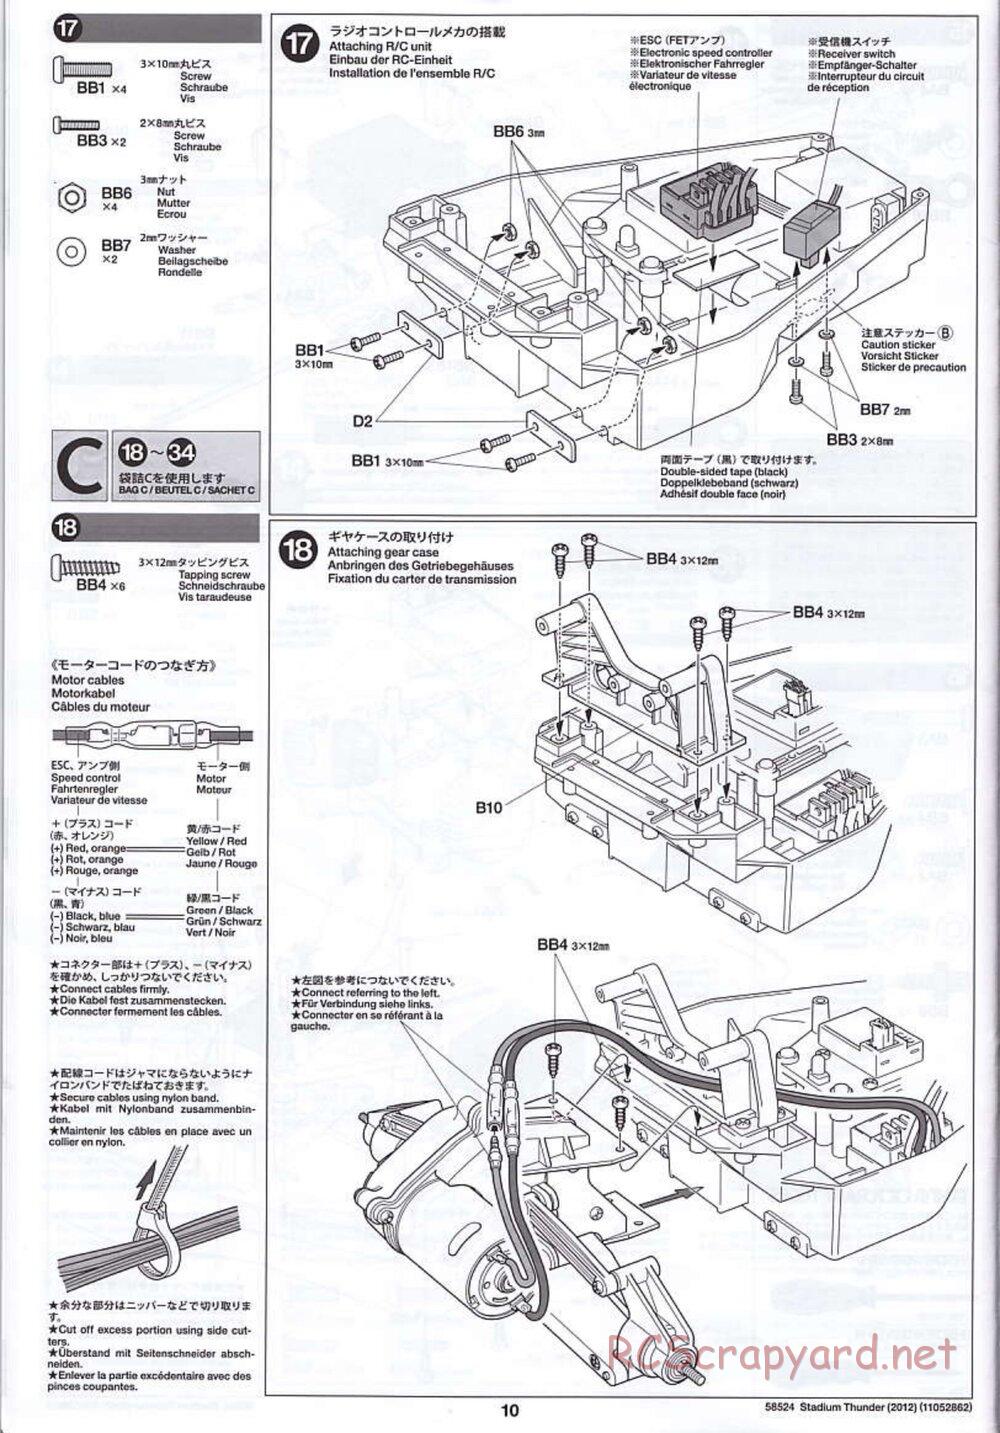 Tamiya - Stadium Thunder 2012 - FAL Chassis - Manual - Page 10